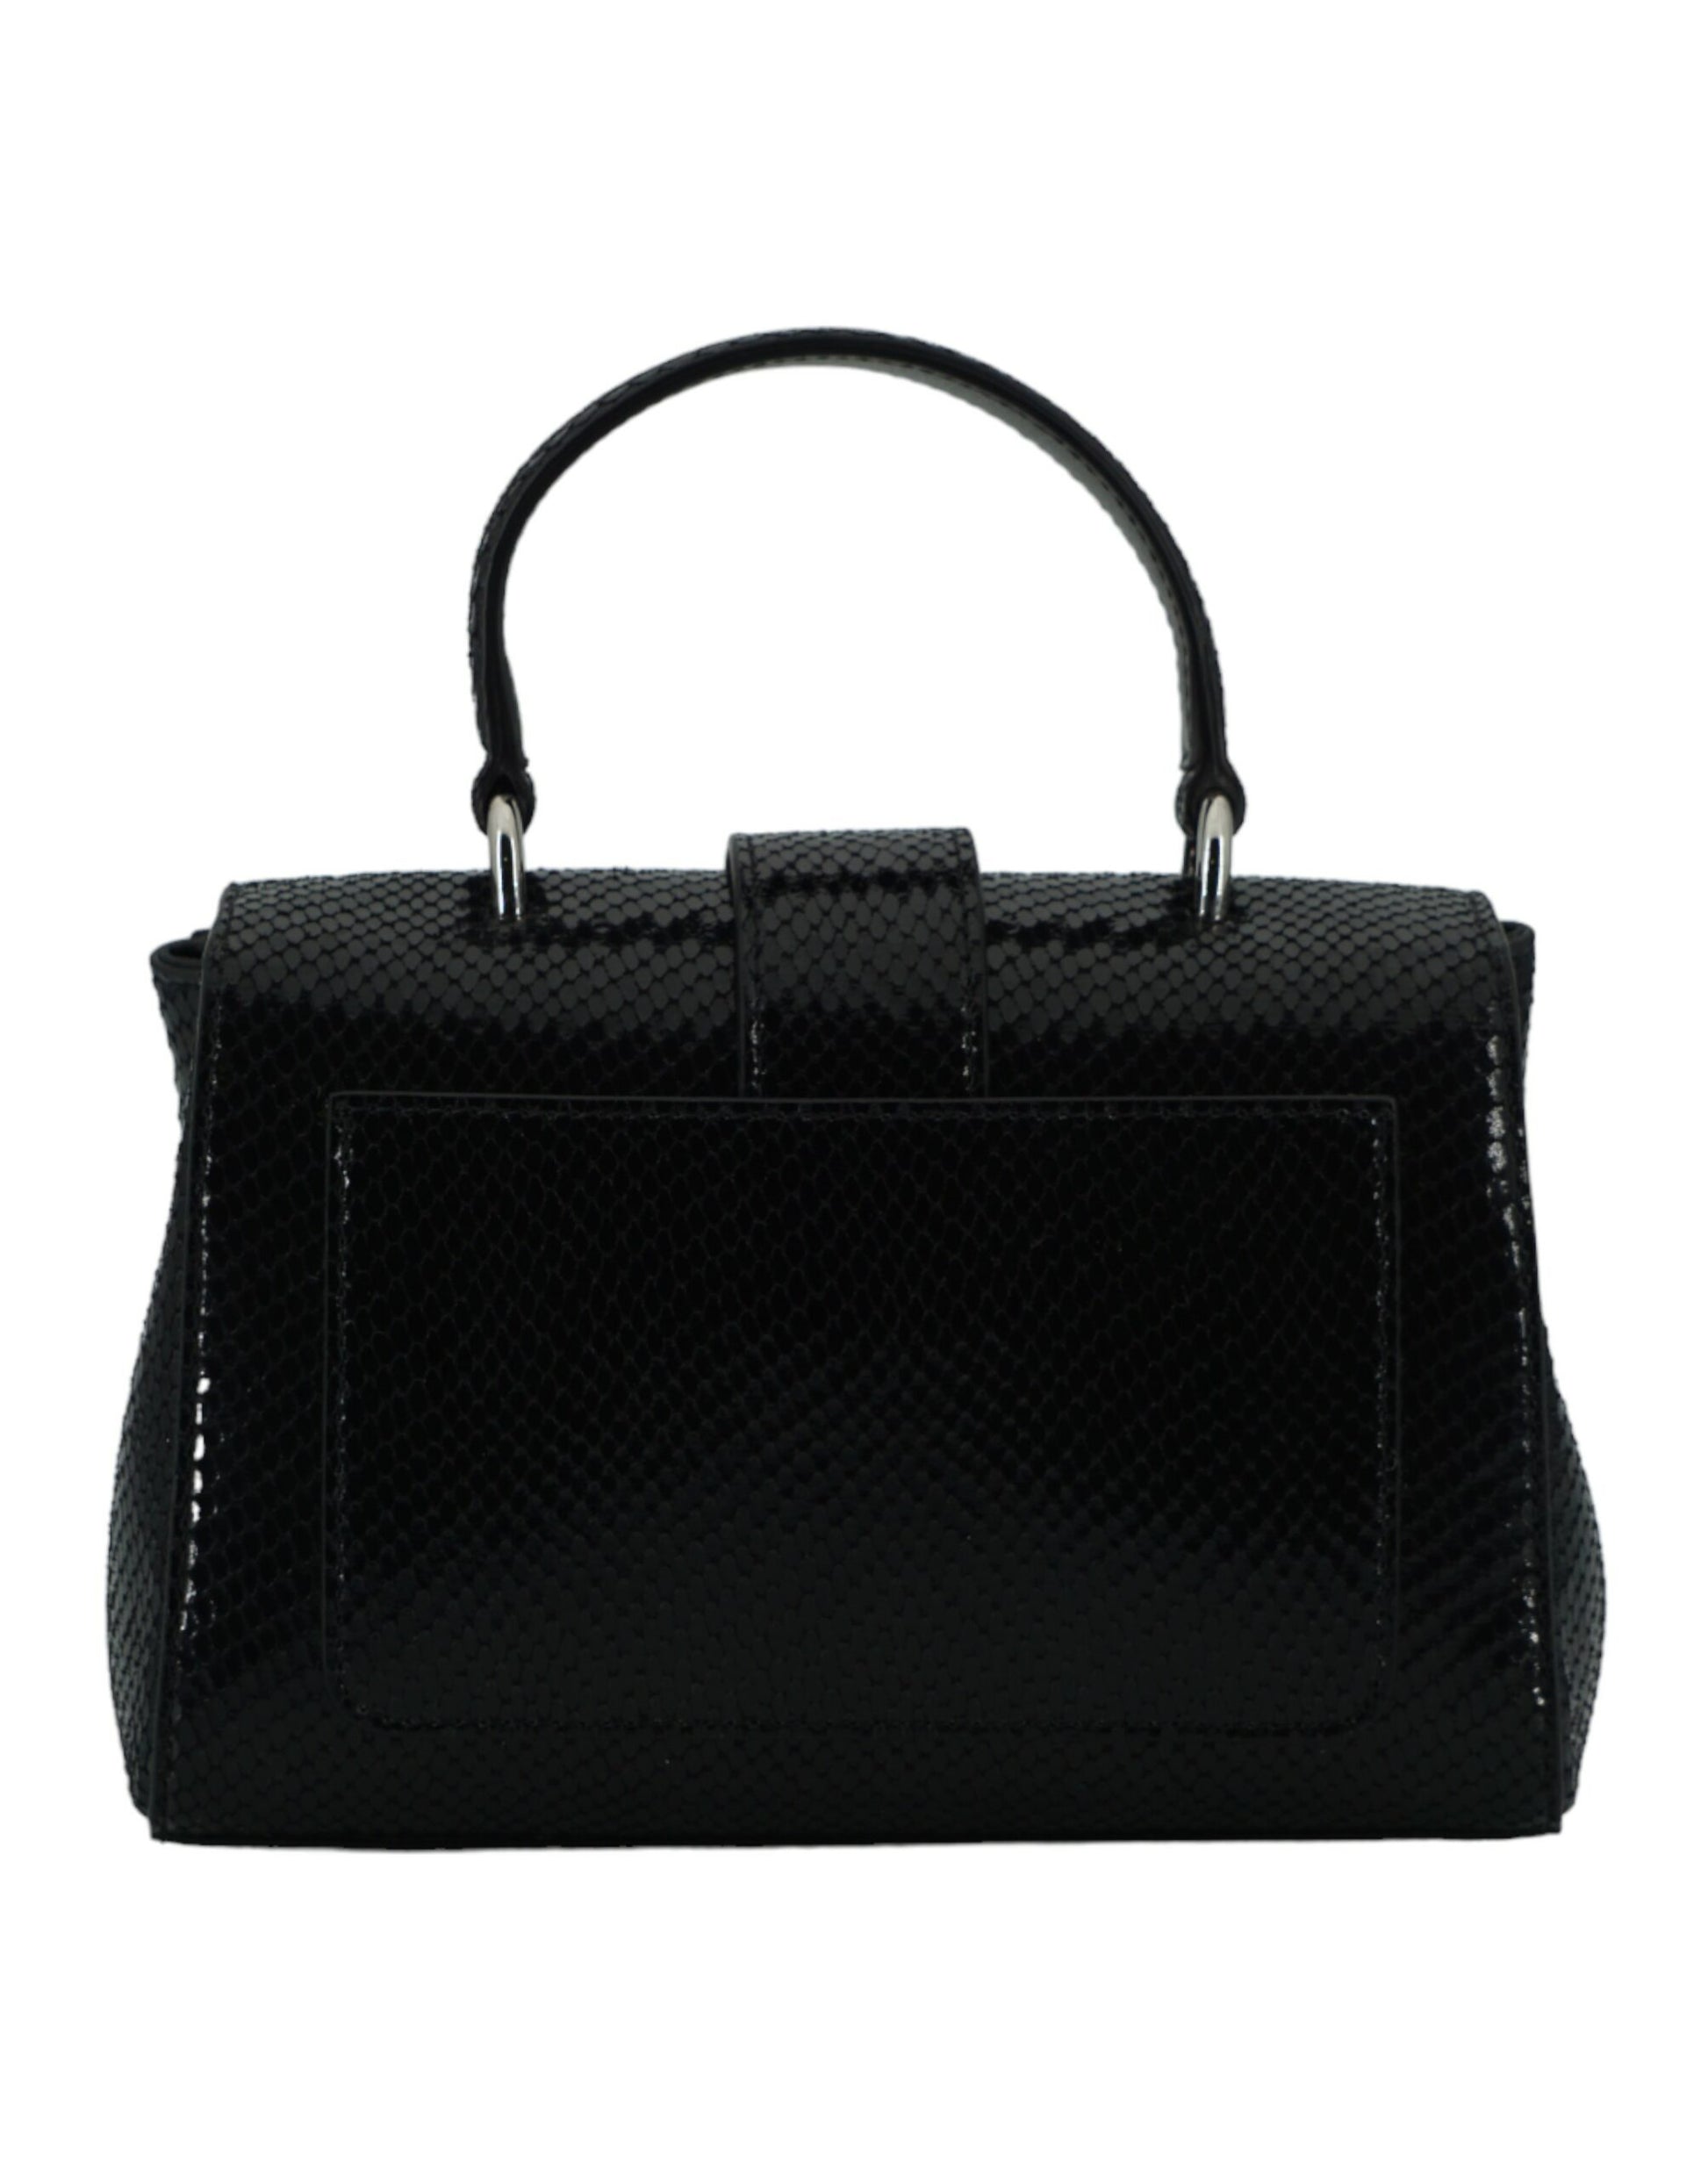 Black Leather Top Handle Shoulder Bag